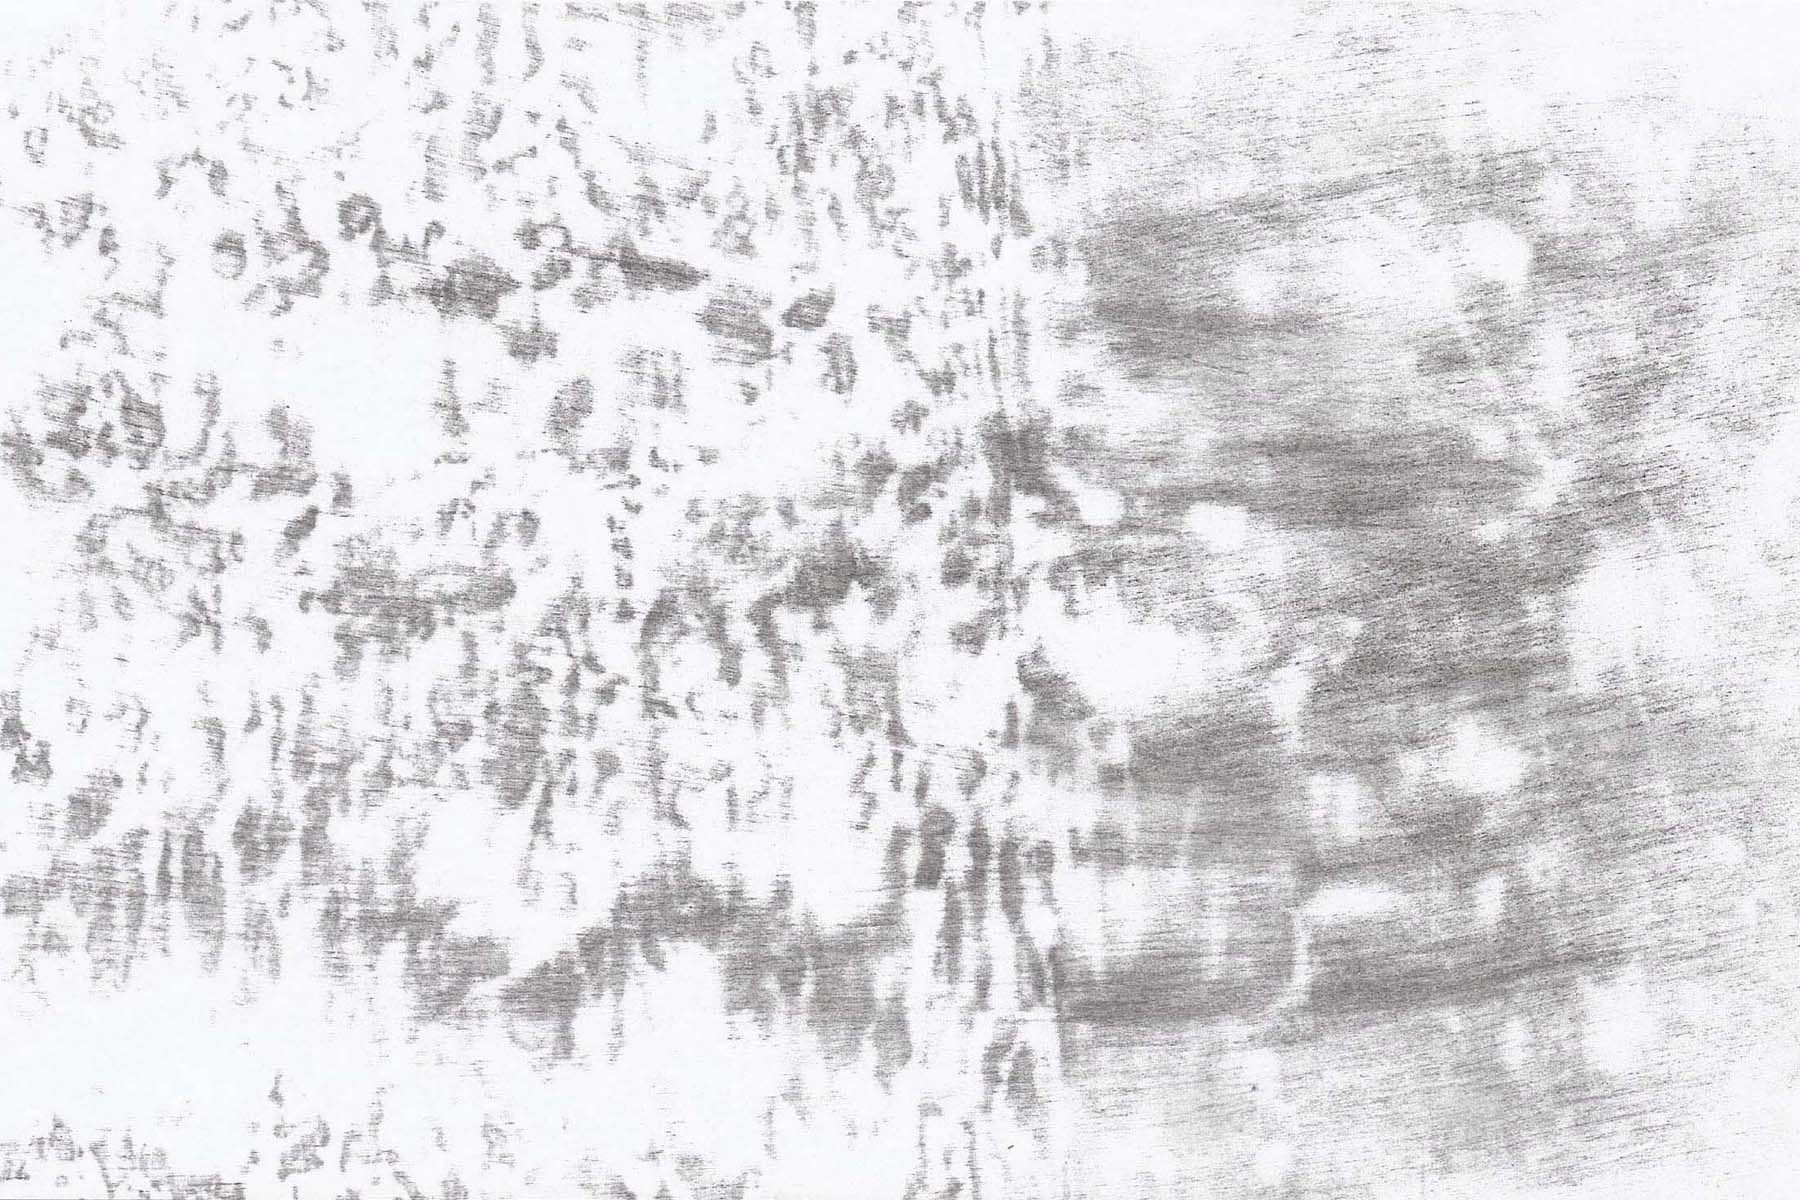 V. De Giovanelli, Come echi che a lungo e da lontano si confondono, 2015, installation, frottage, graphite on stone paper, 21 x 12 cm each